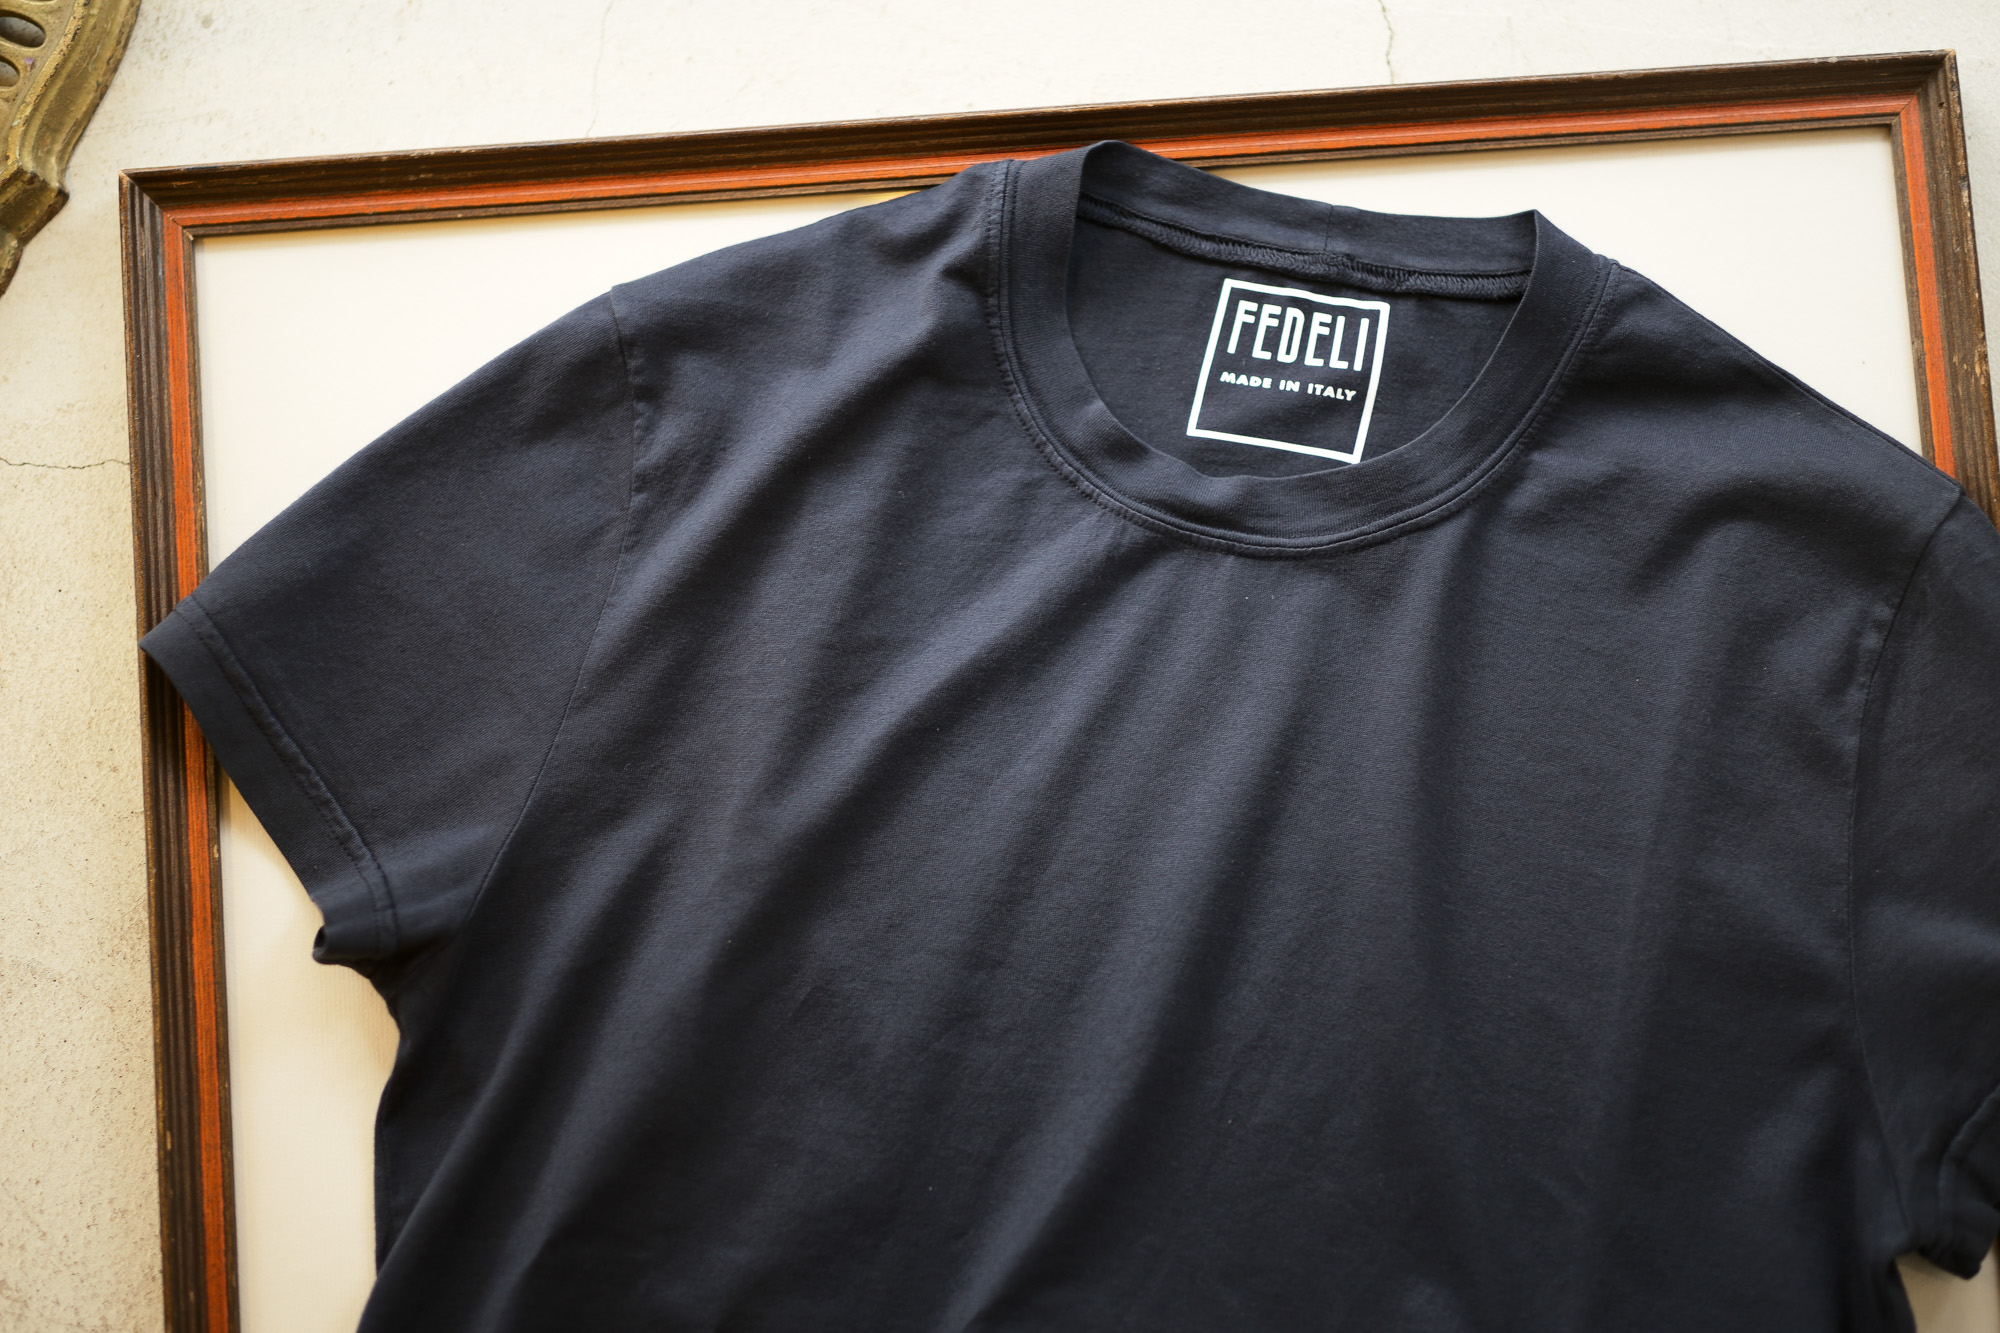 FEDELI (フェデーリ) Crew Neck T-shirt (クルーネック Tシャツ) ギザコットン Tシャツ NAVY (ネイビー